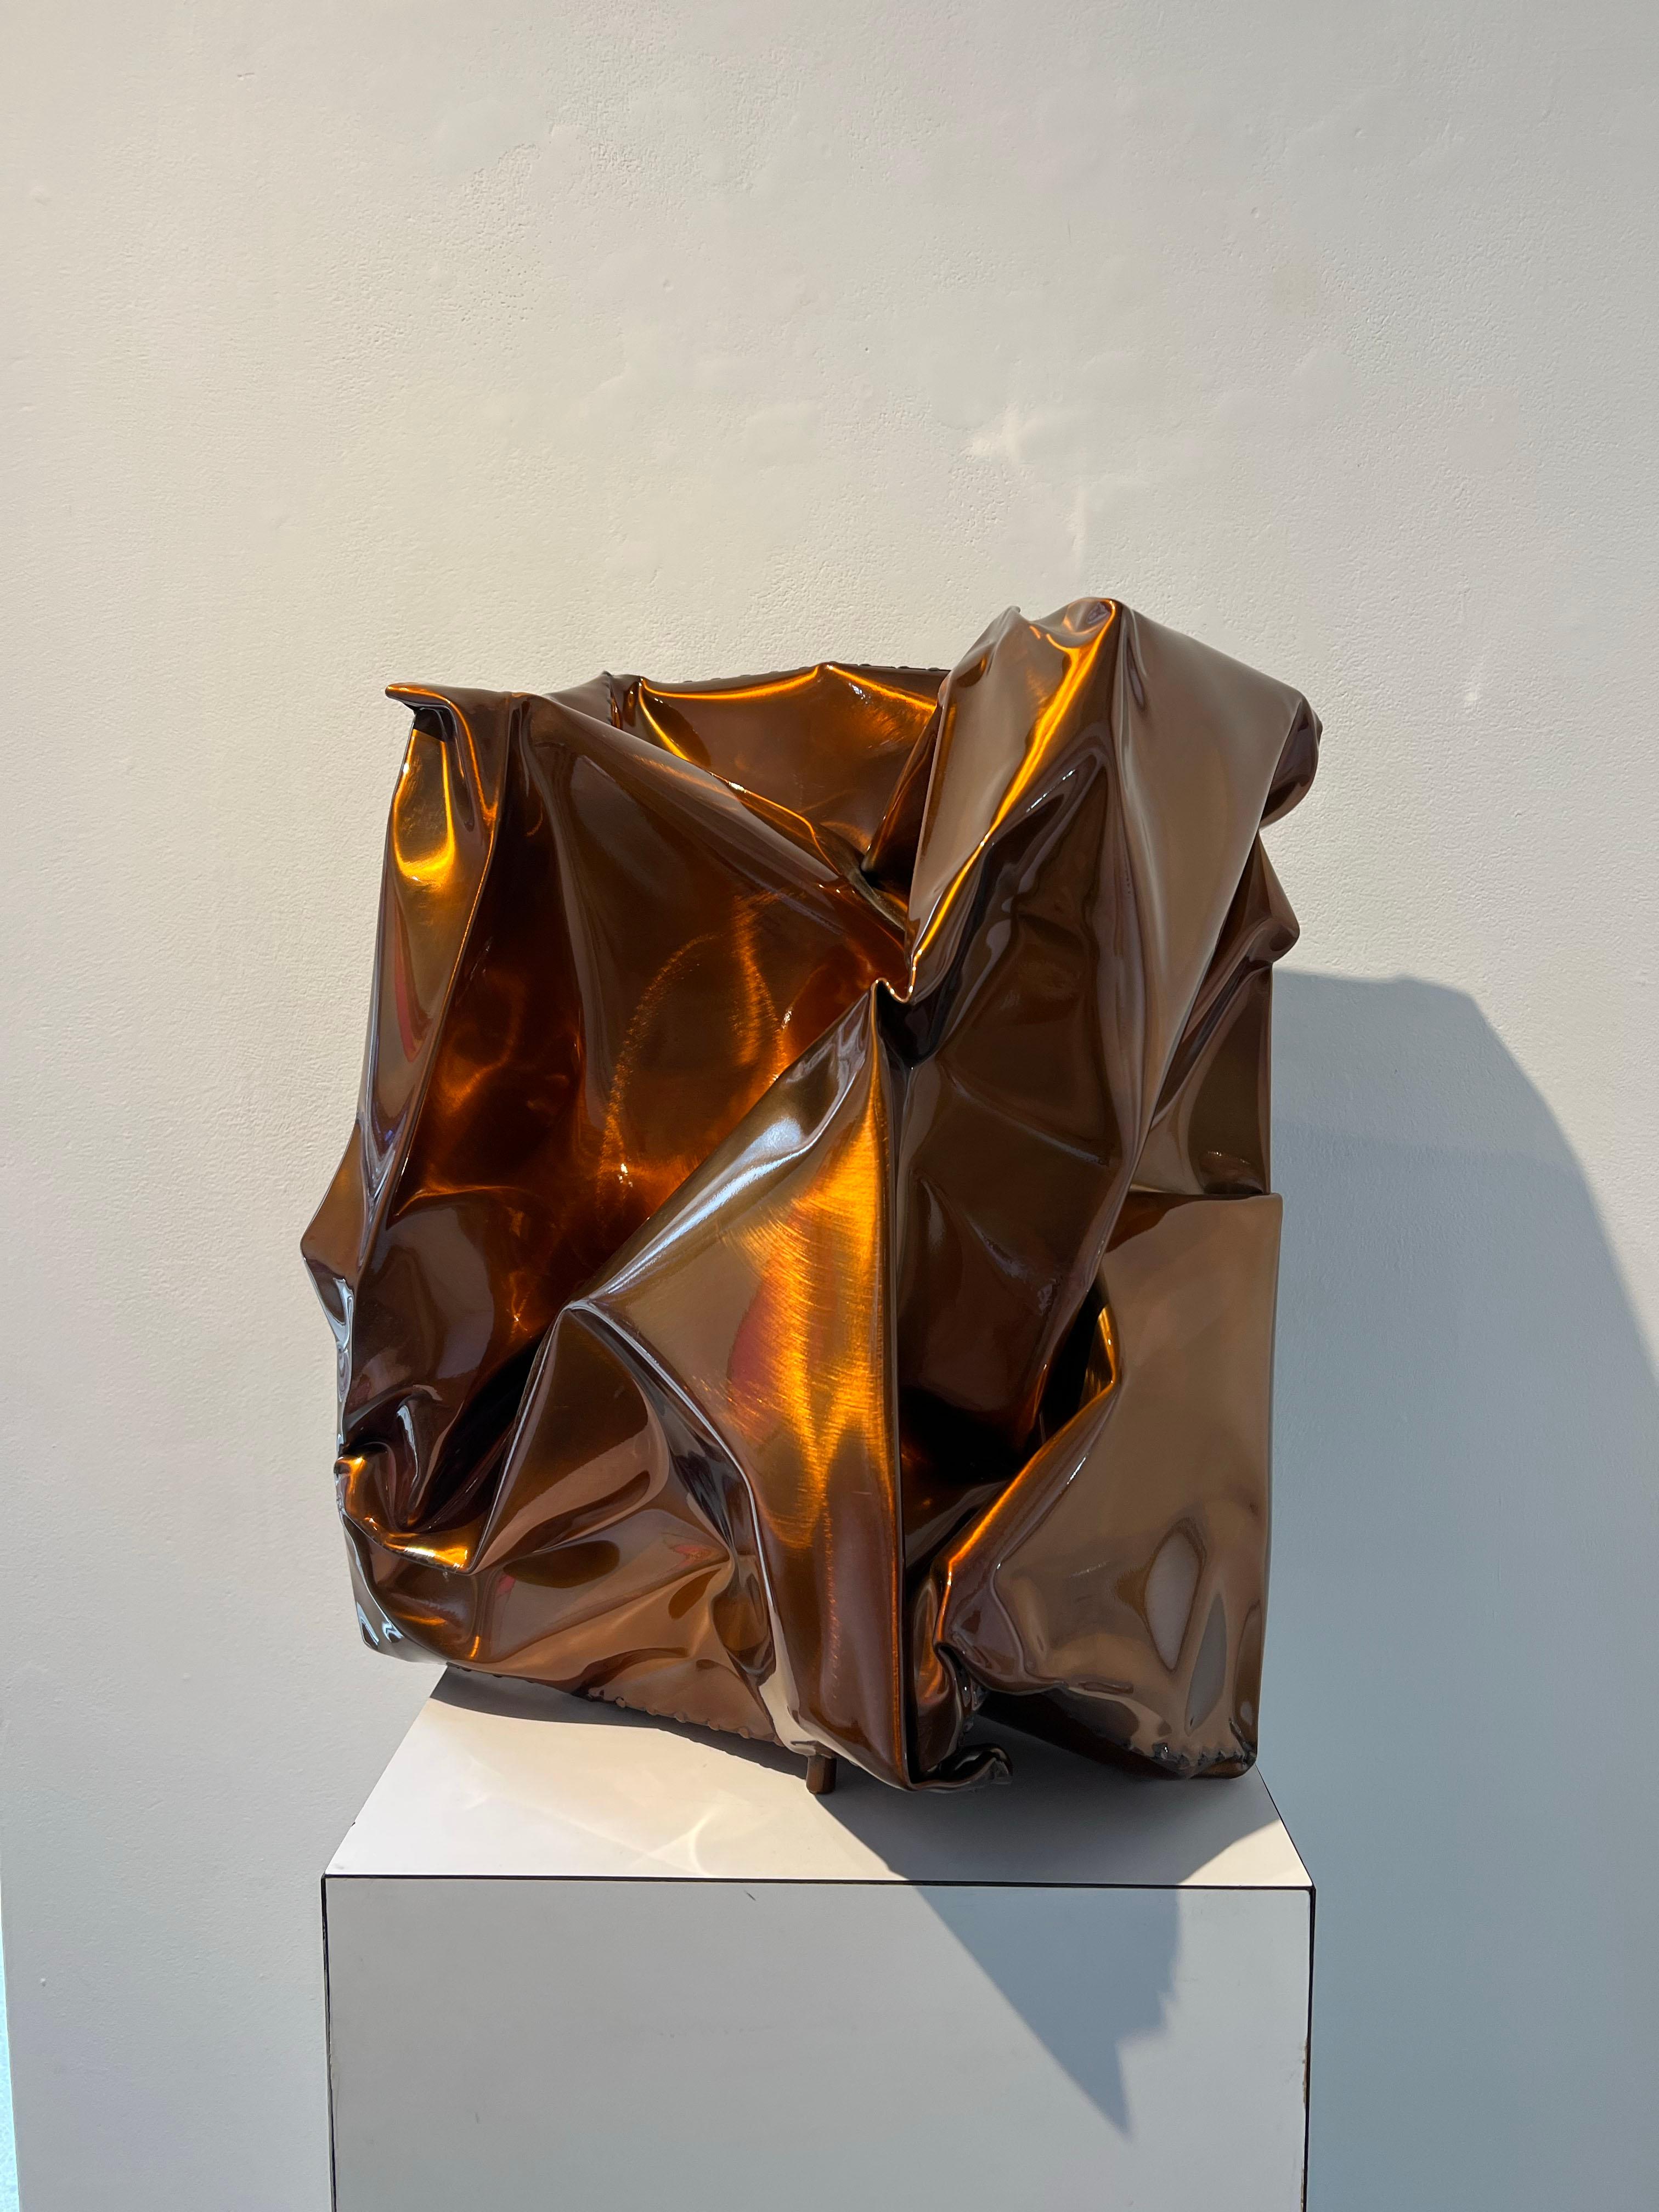 Kastanienholz – Sculpture von Rick Lazes